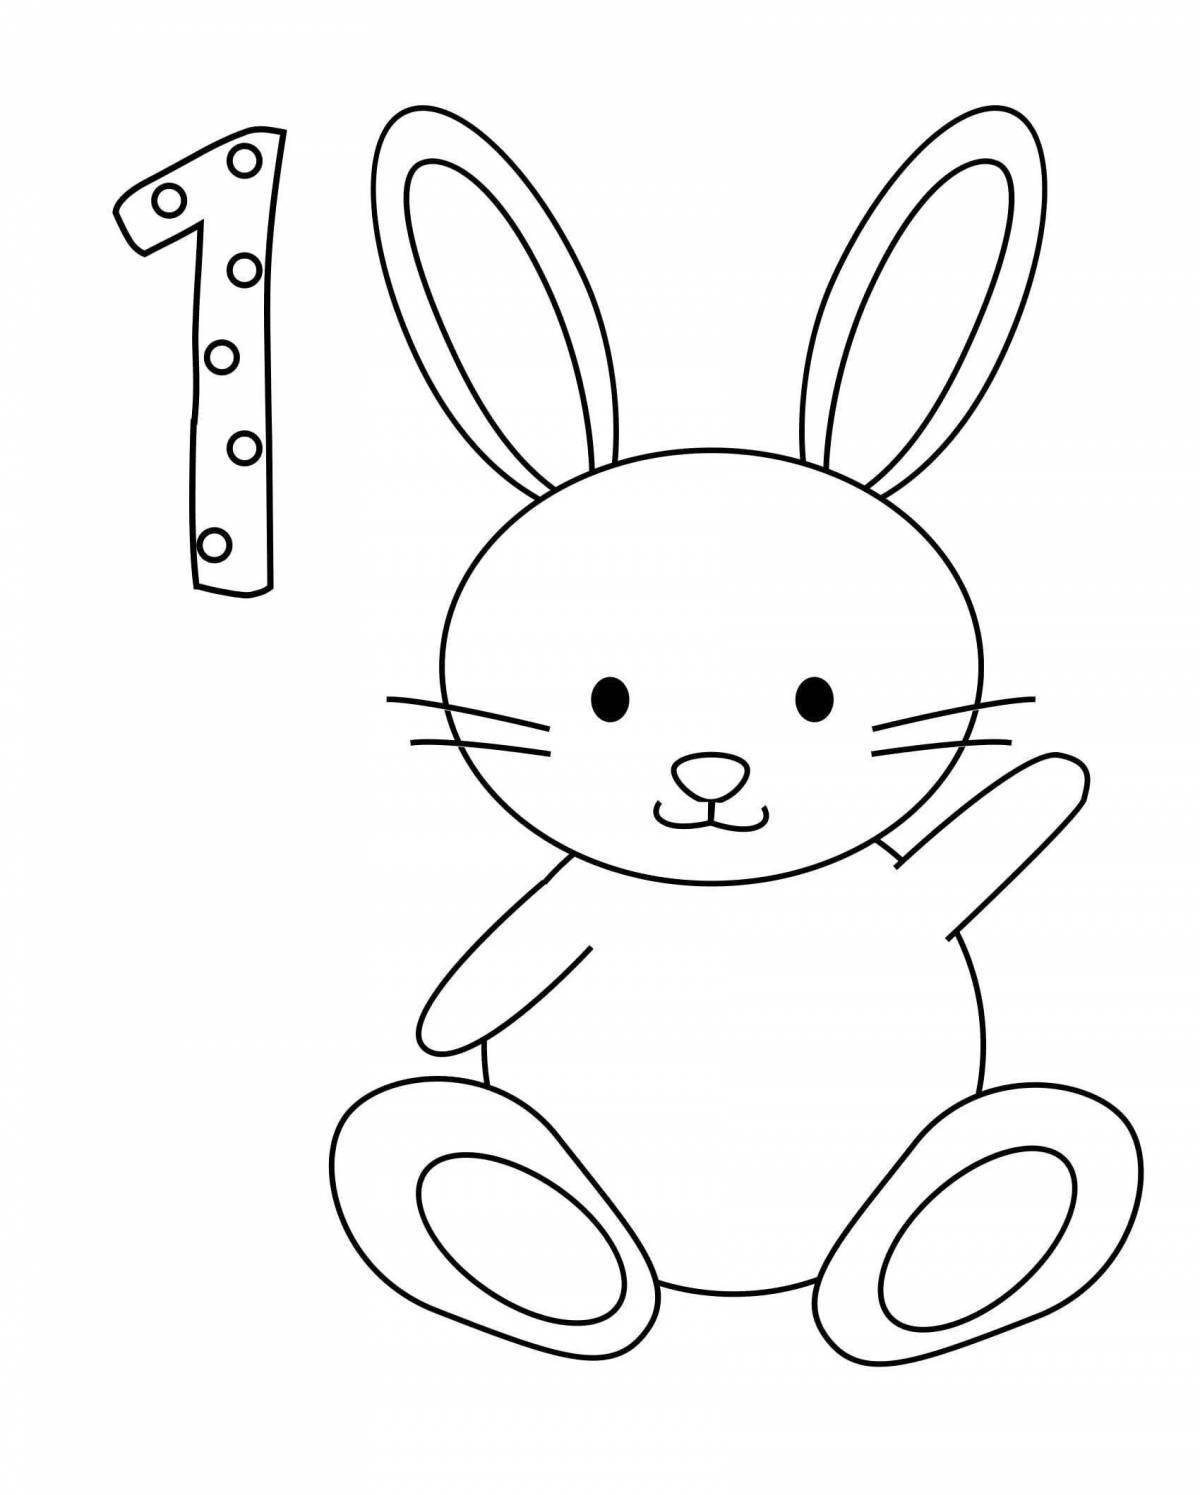 Сладкая раскраска рисунок зайца для детей